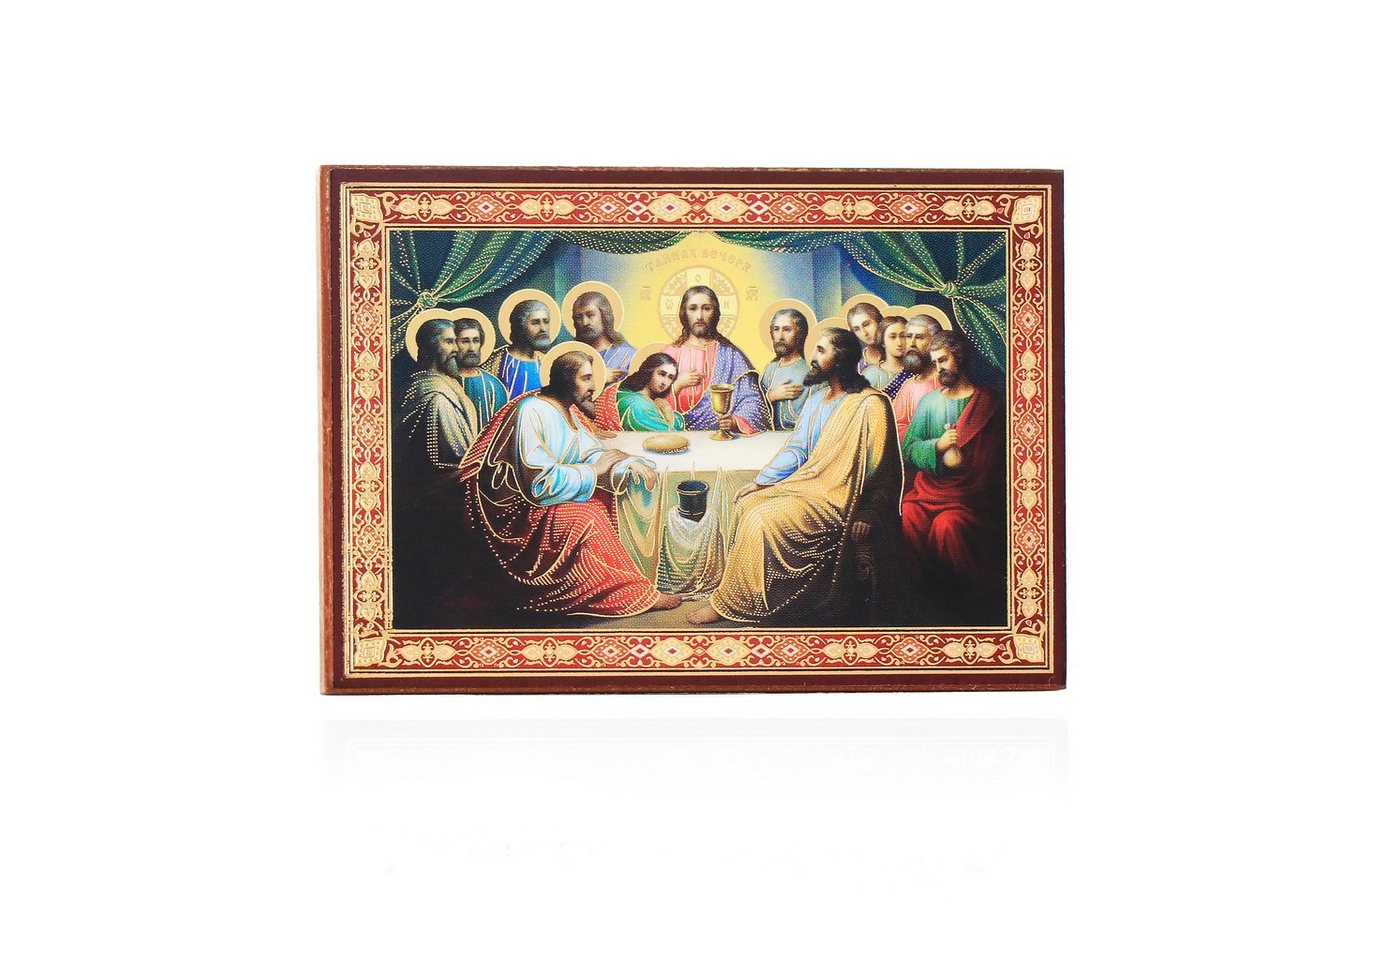 NKlaus Bild Das Letzte Abendmahl Holz Ikone 6x8cm christlich orthodox 11404, Religion von NKlaus